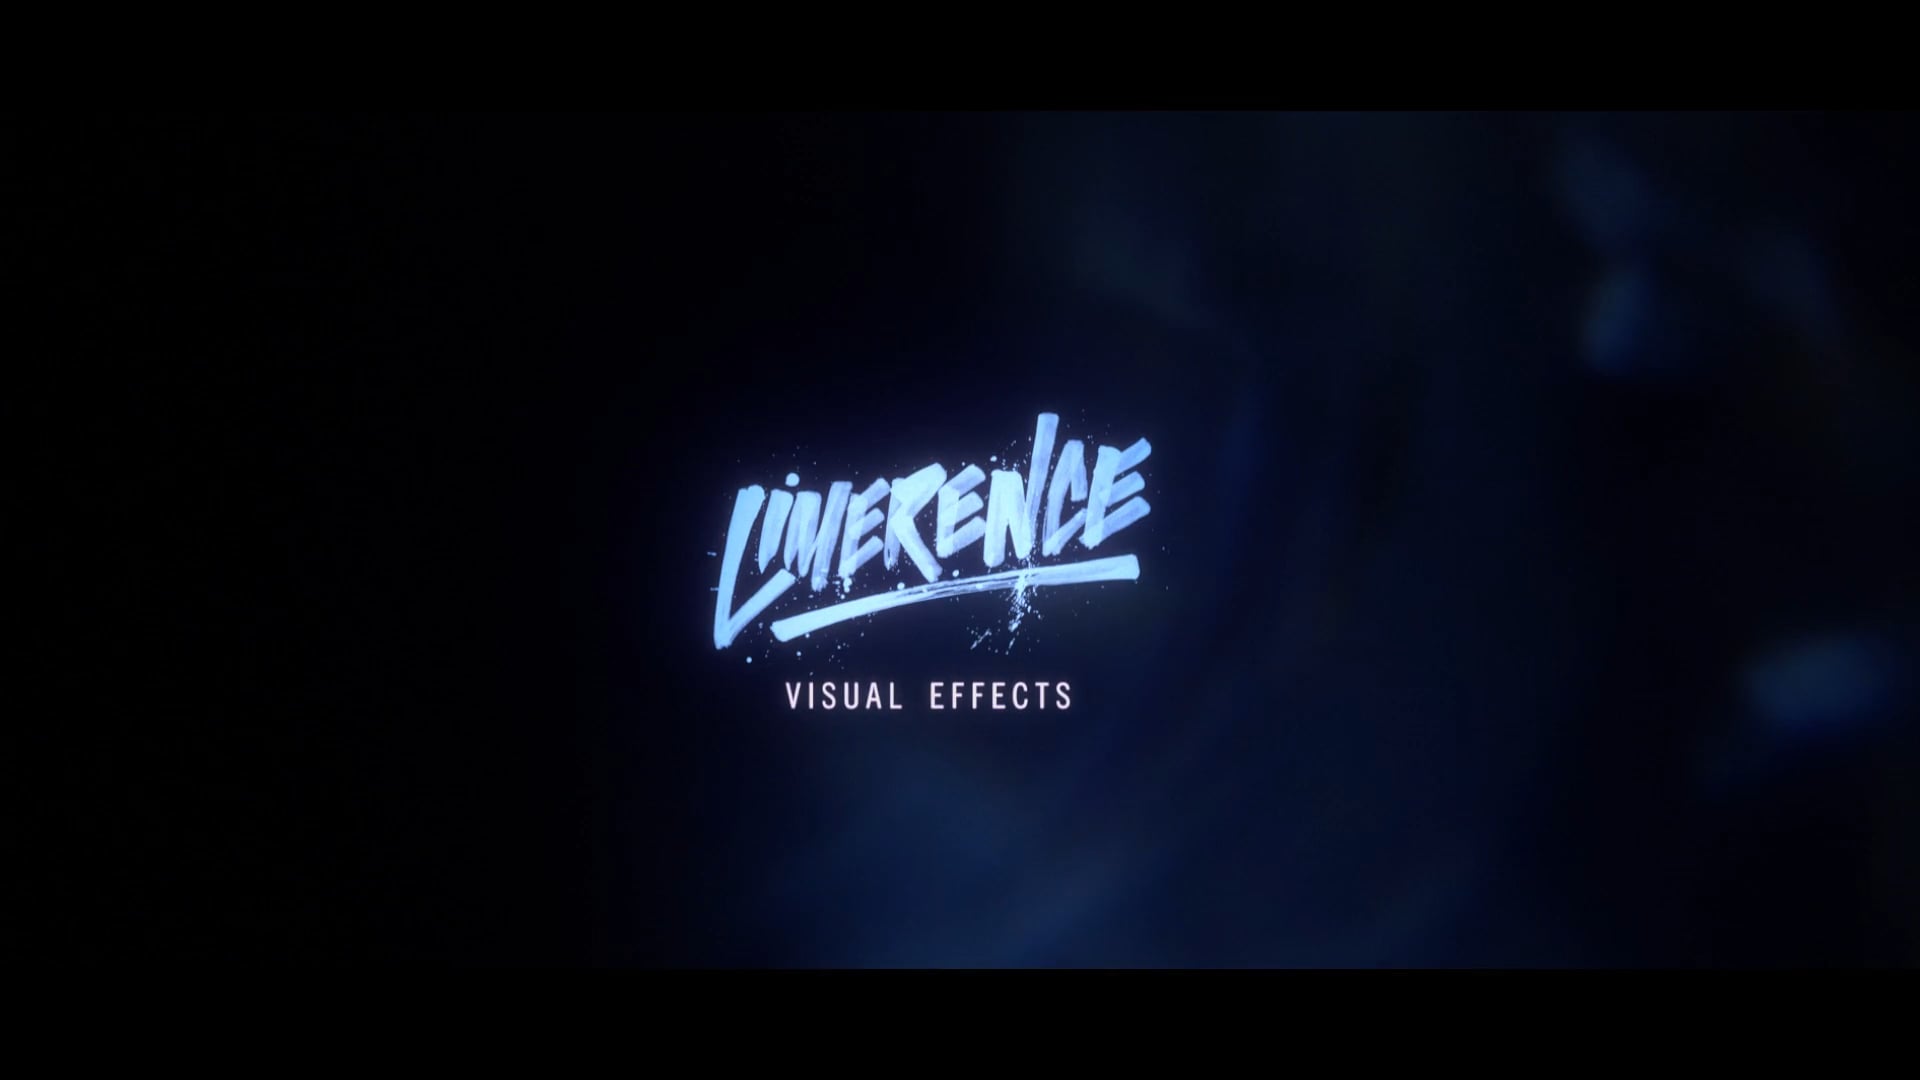 Limerence VFX Reel